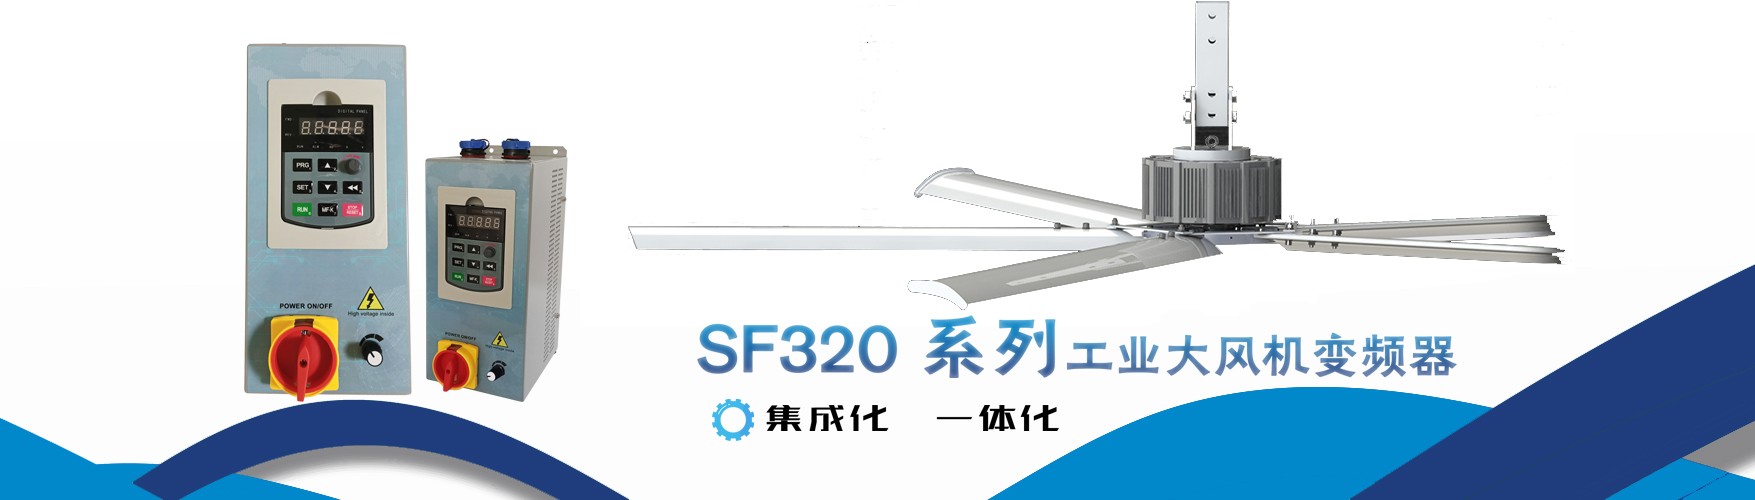 SF320系列工业大风机变频器